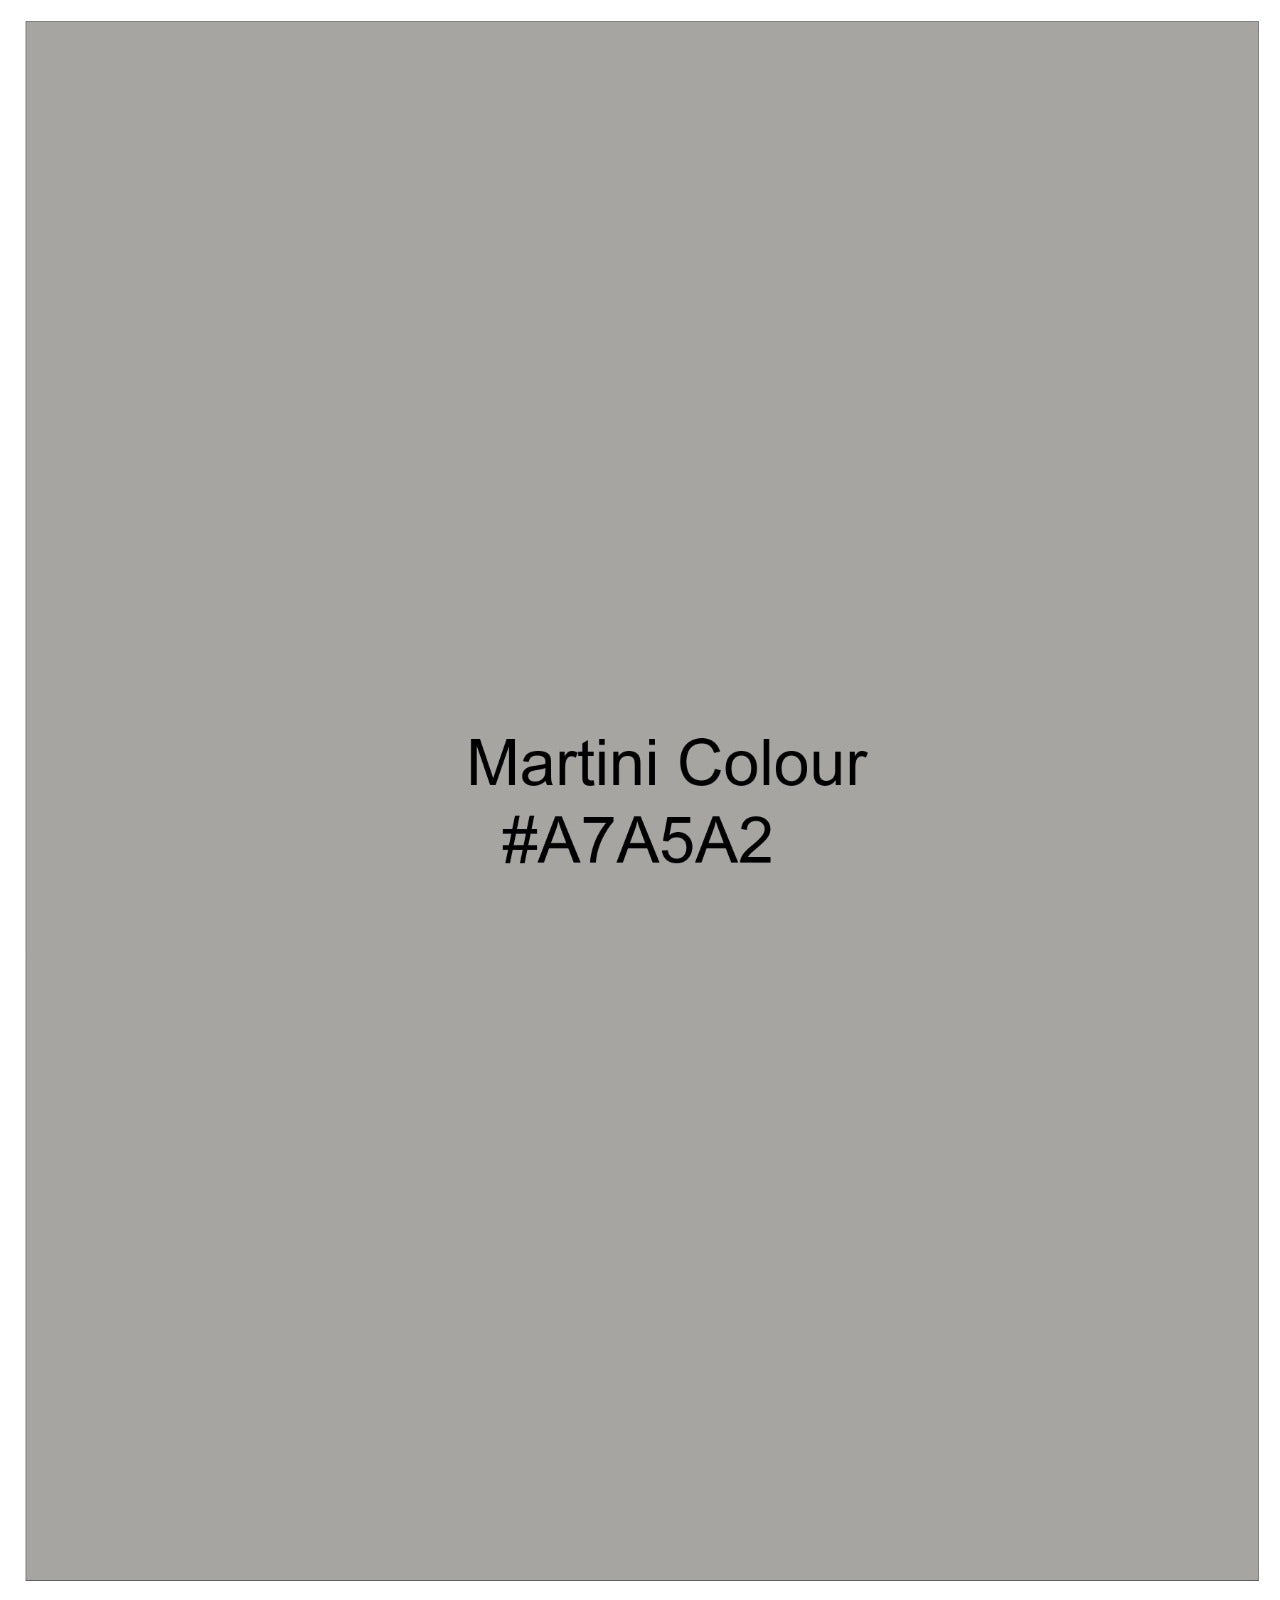 Martini Gray Stretchable Premium Cotton traveler Pant T2667-28, T2667-30, T2667-32, T2667-34, T2667-36, T2667-38, T2667-40, T2667-42, T2667-44